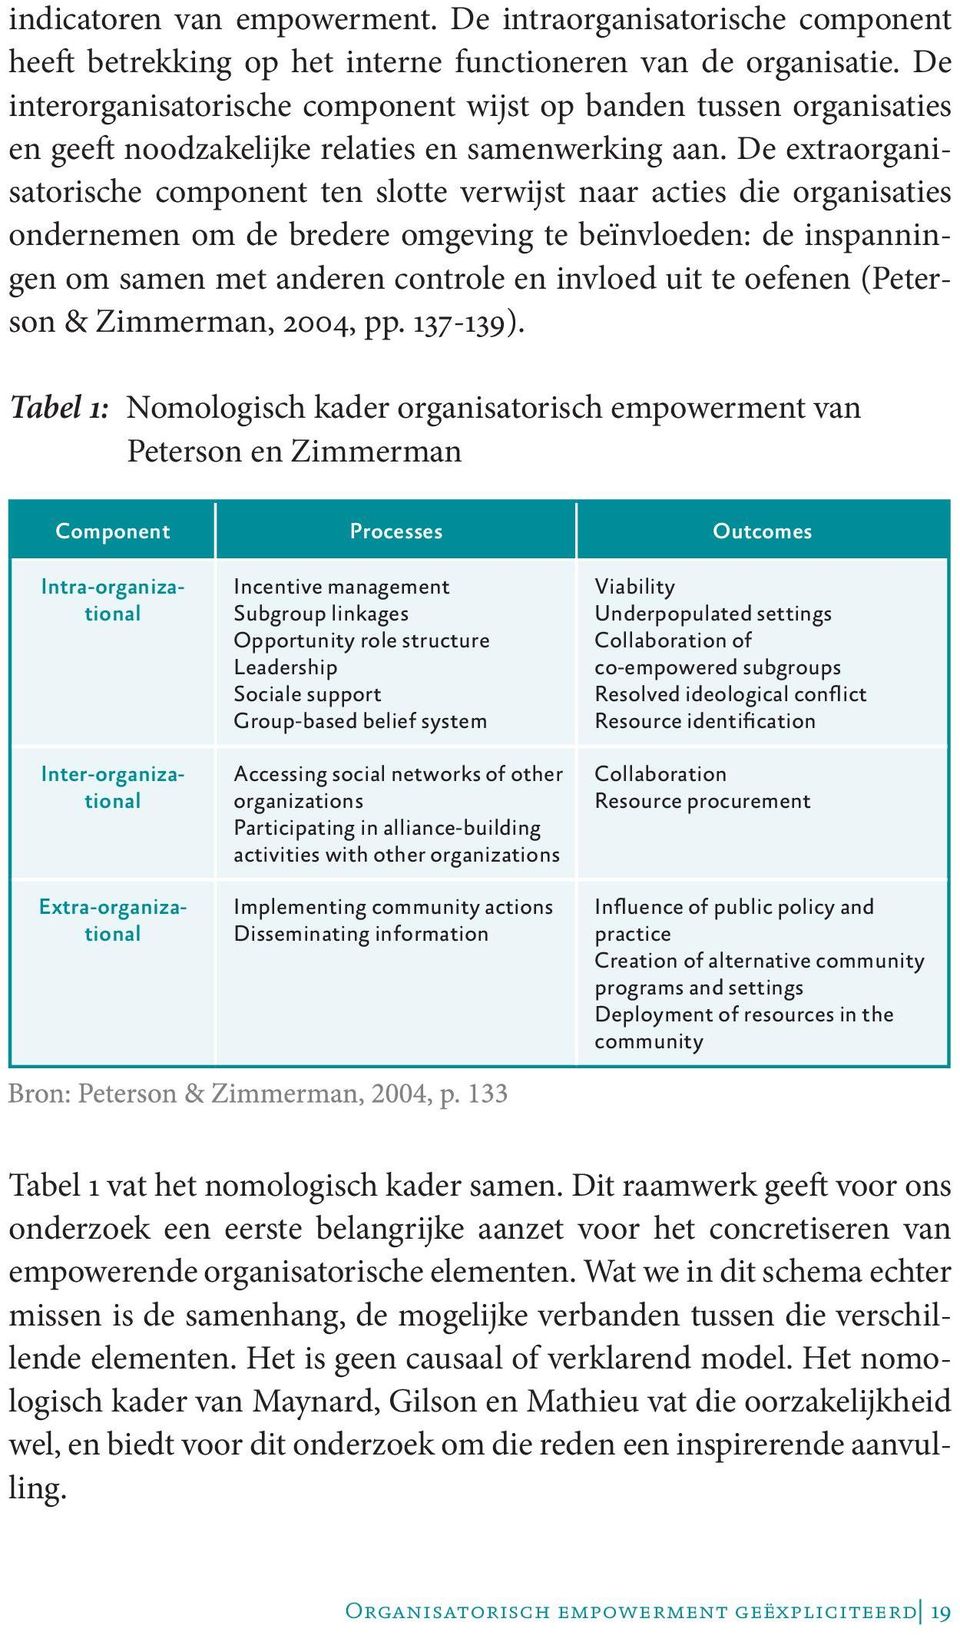 De extraorganisatorische component ten slotte verwijst naar acties die organisaties ondernemen om de bredere omgeving te beïnvloeden: de inspanningen om samen met anderen controle en invloed uit te